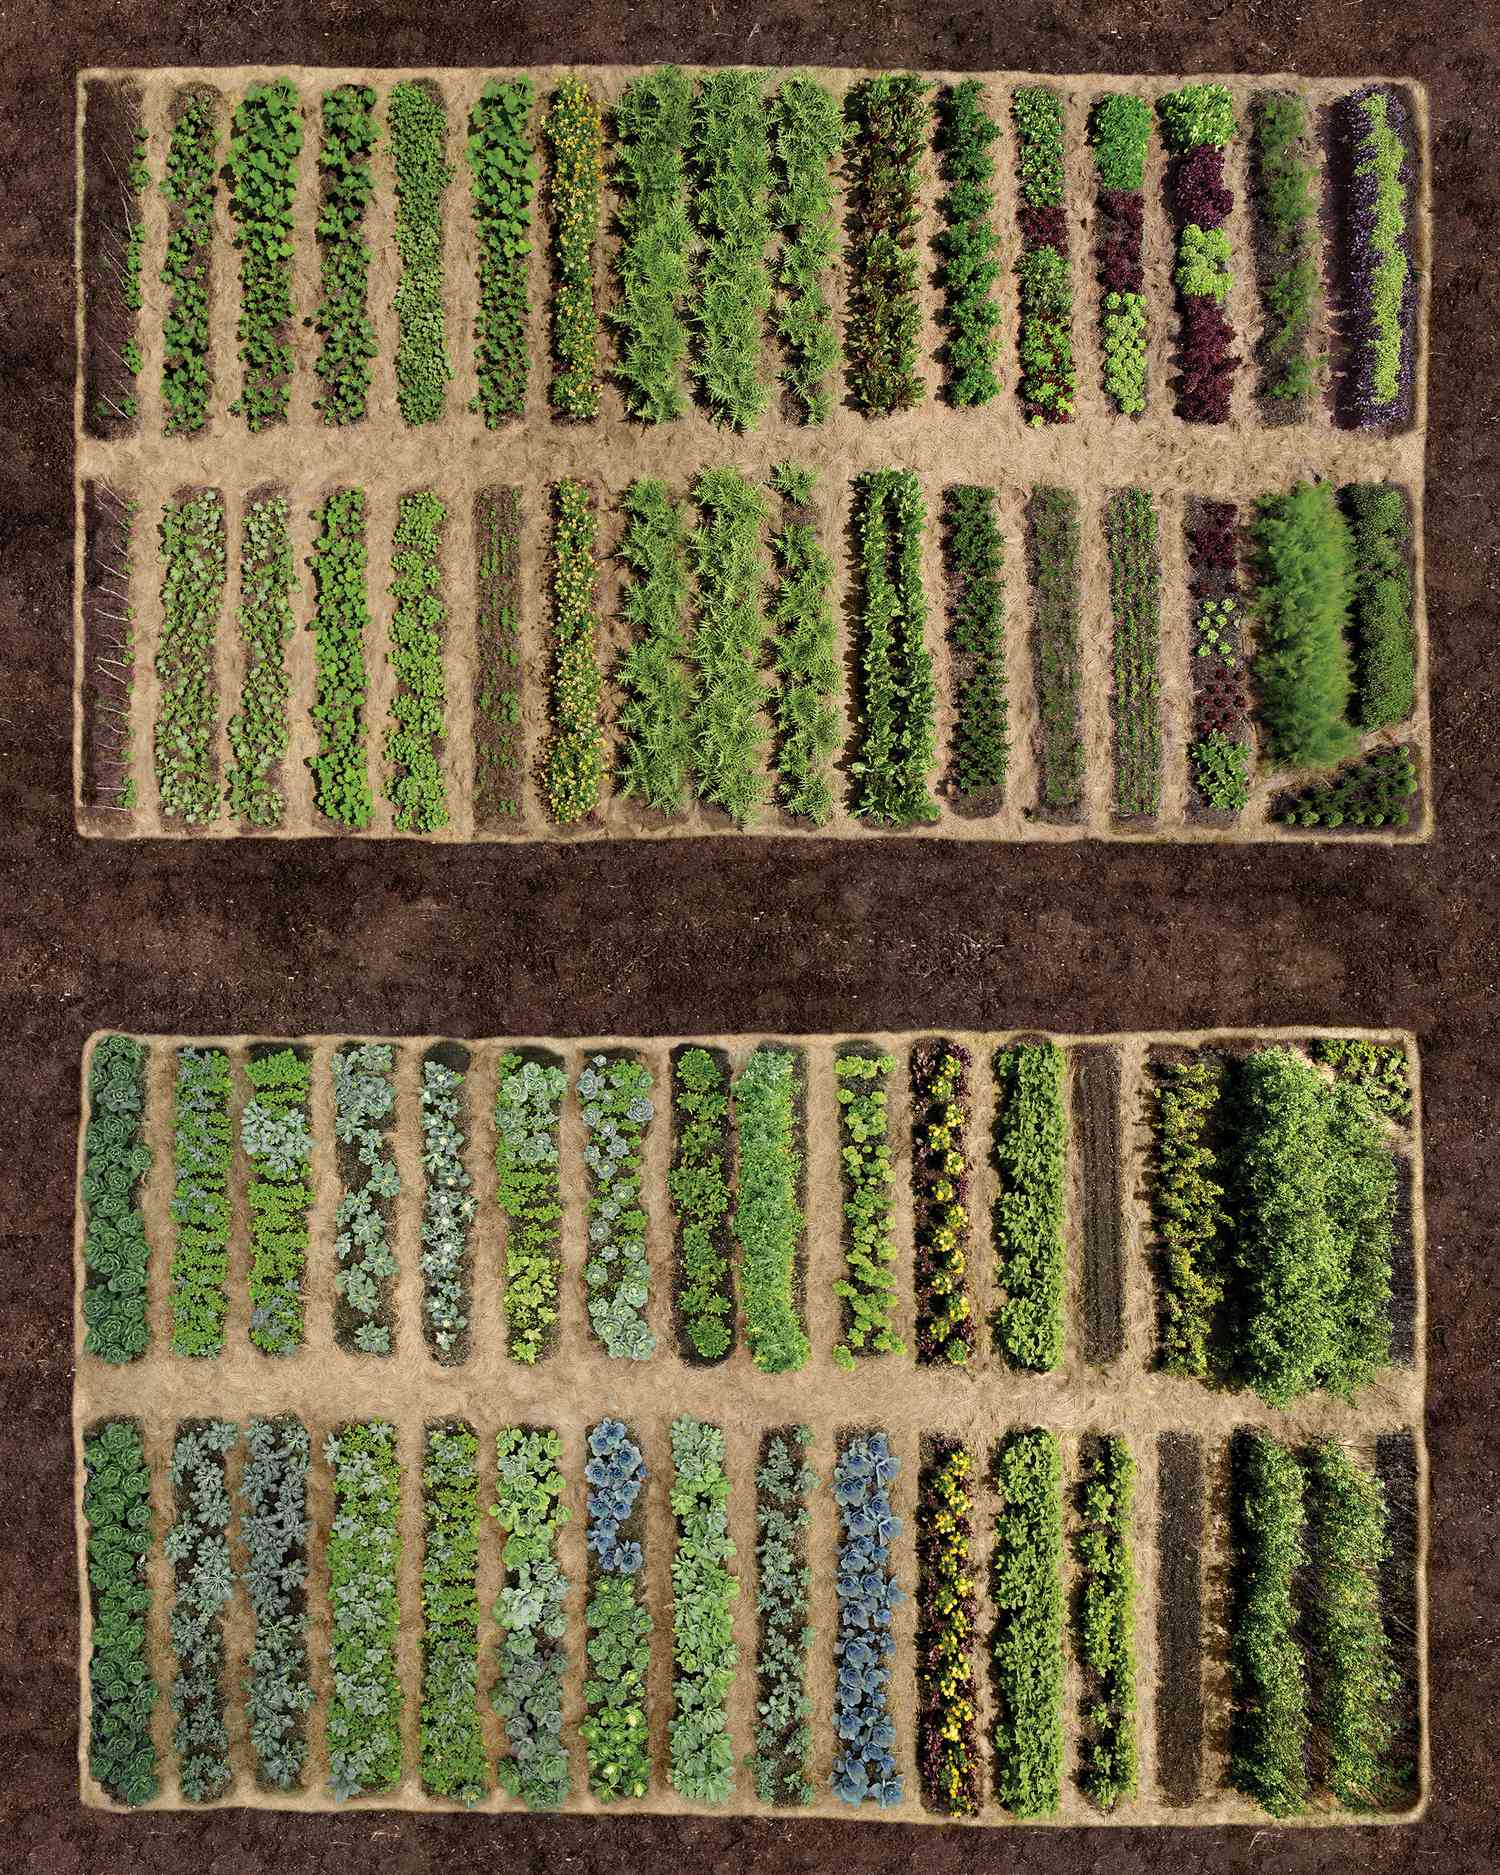 Planning Your Vegetable Garden Tips | Martha Stewart